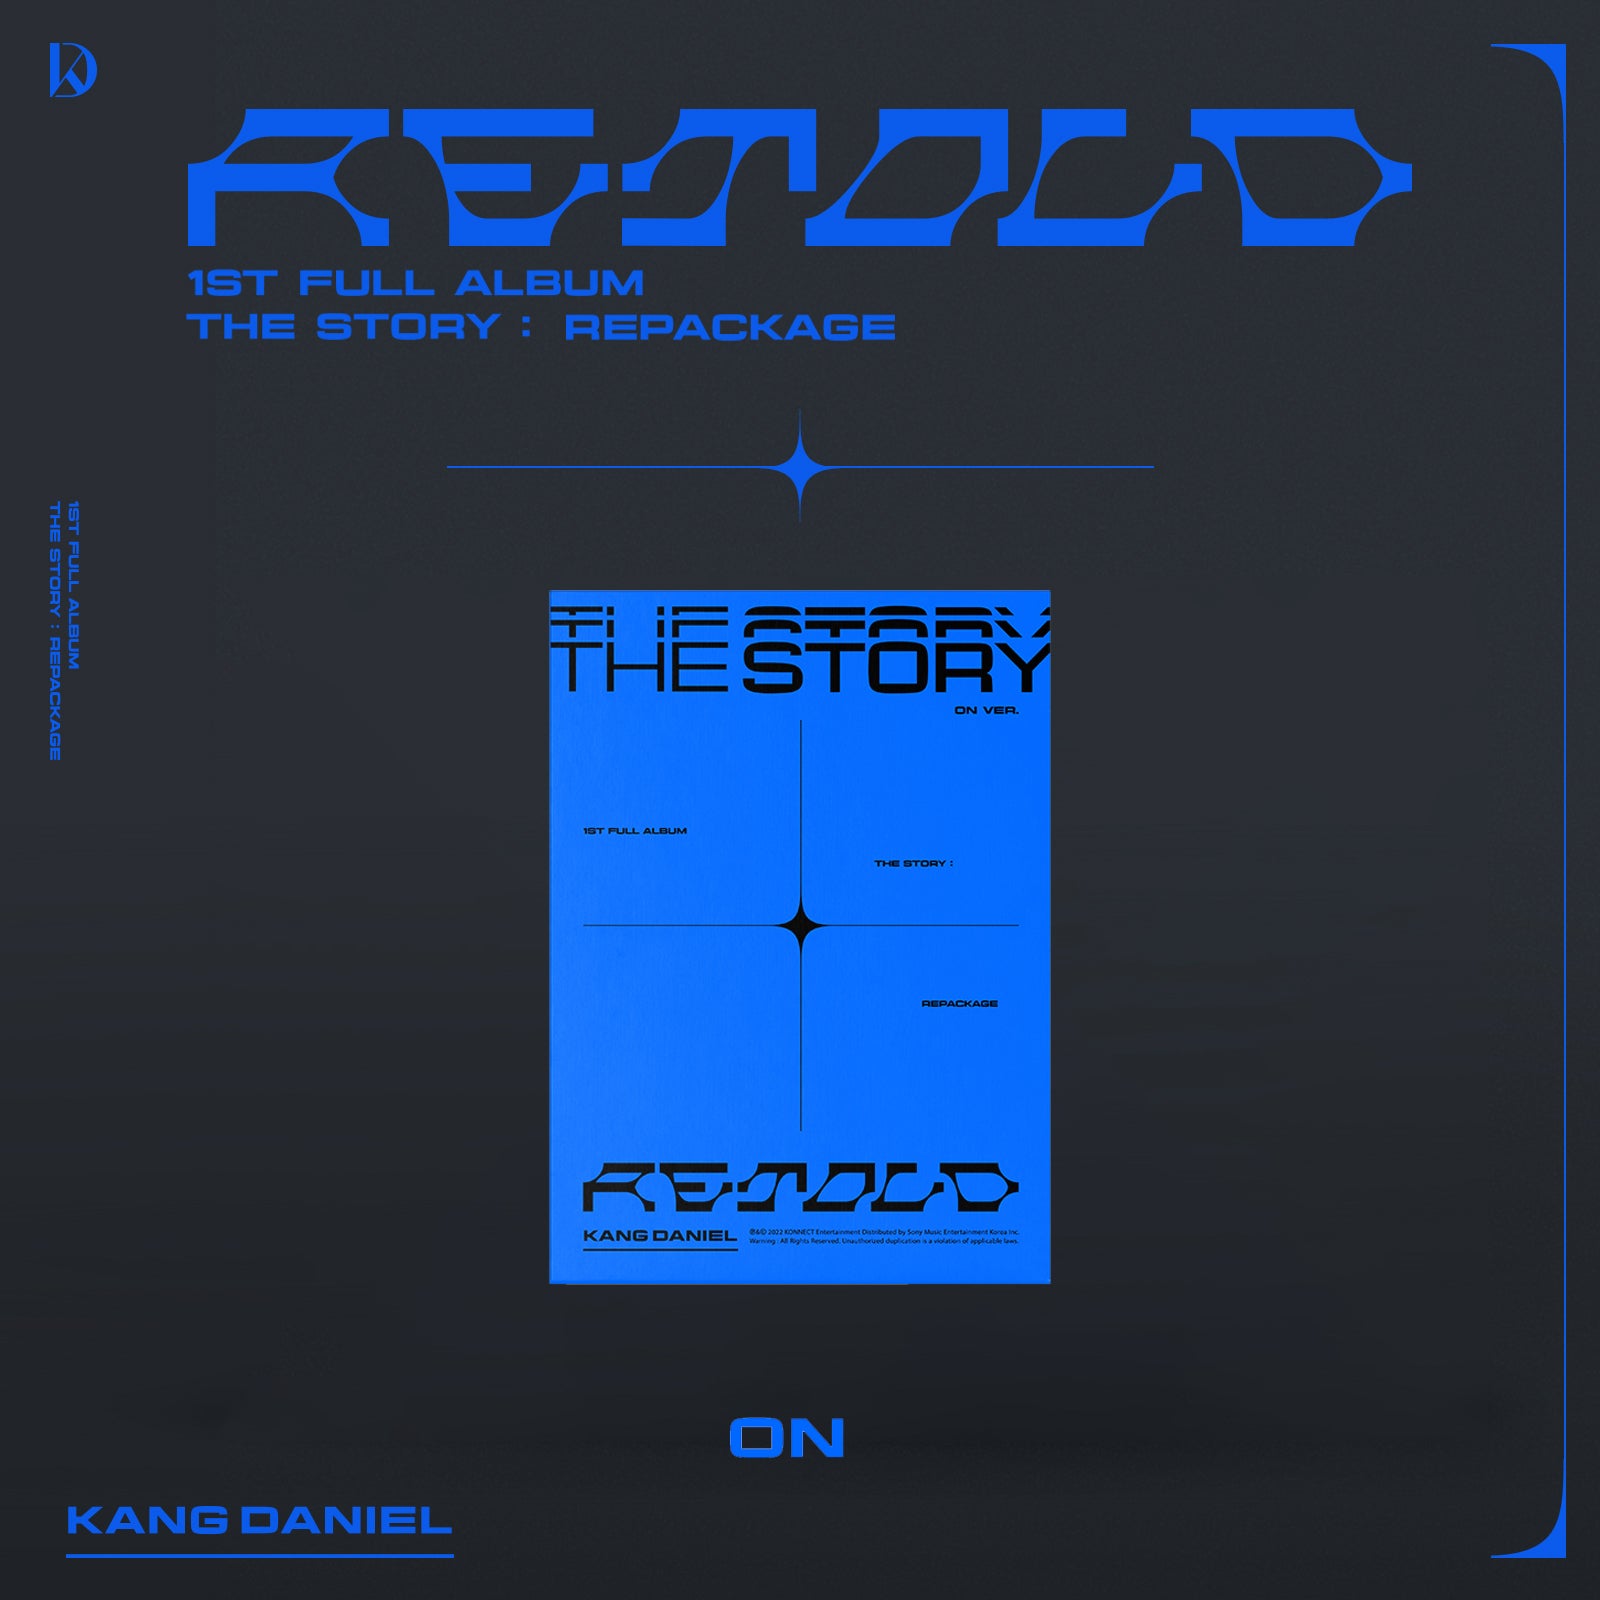 KANG DANIEL 1ST FULL ALBUM REPACKAGE 'RETOLD' ON VERSION COVER